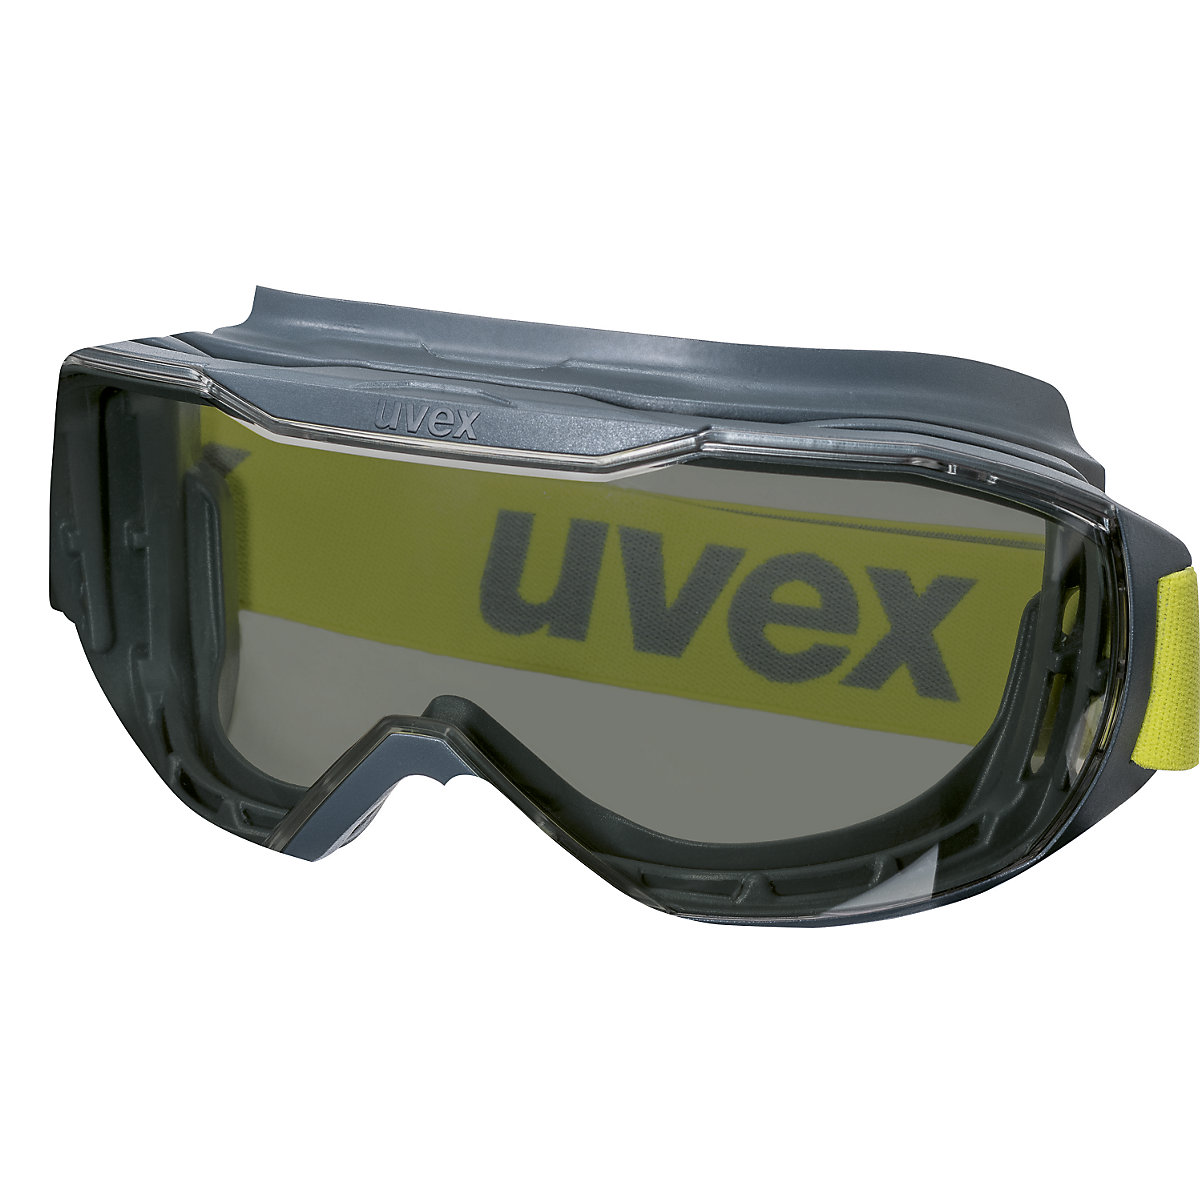 Velika zaščitna očala megasonic - Uvex